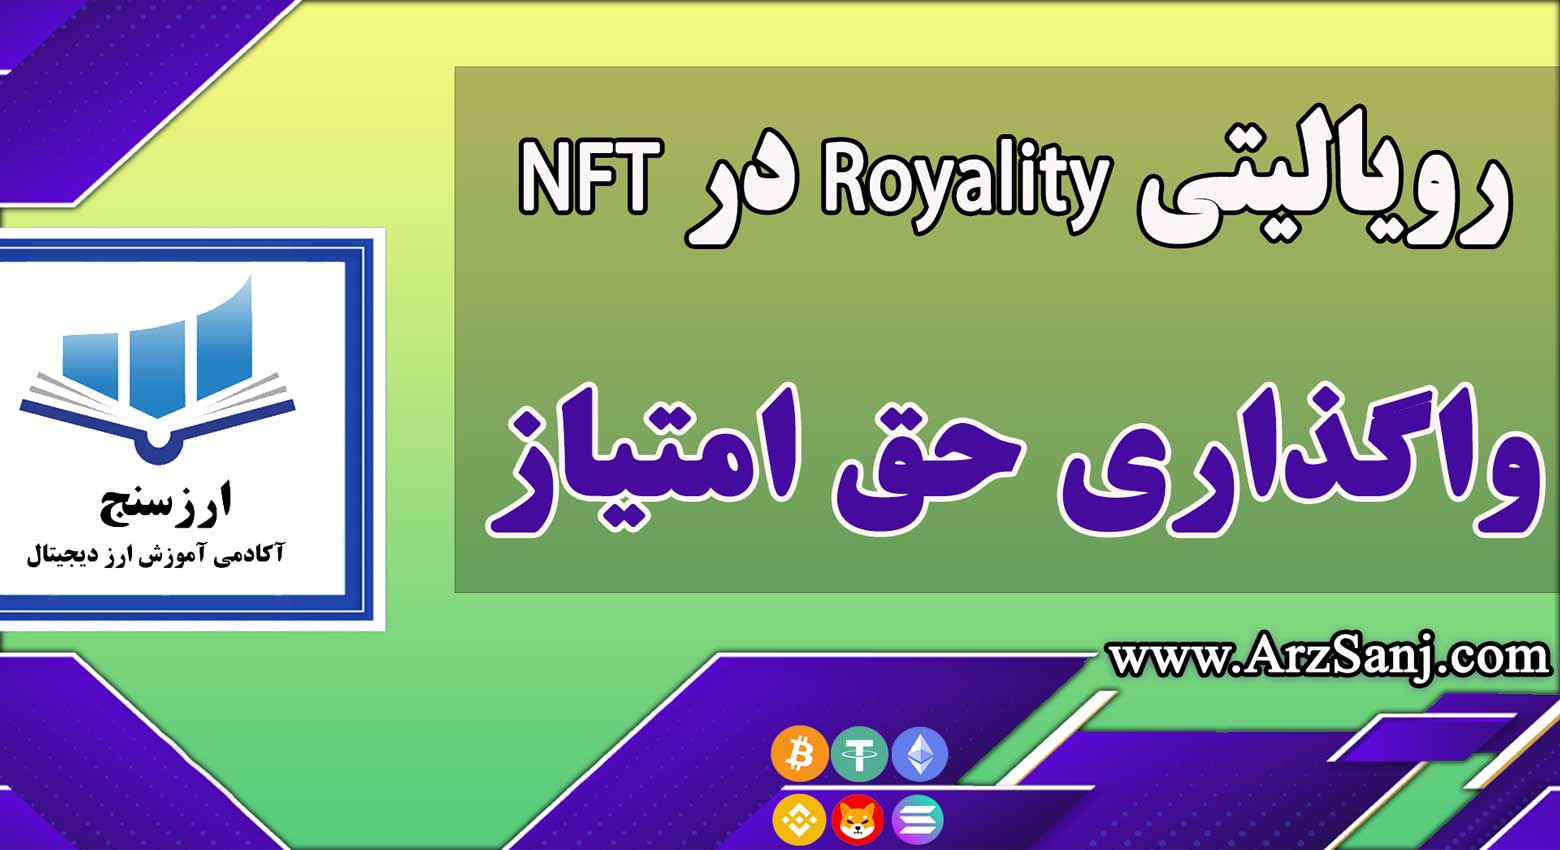 رویالیتی Royality در NFT چیست؟